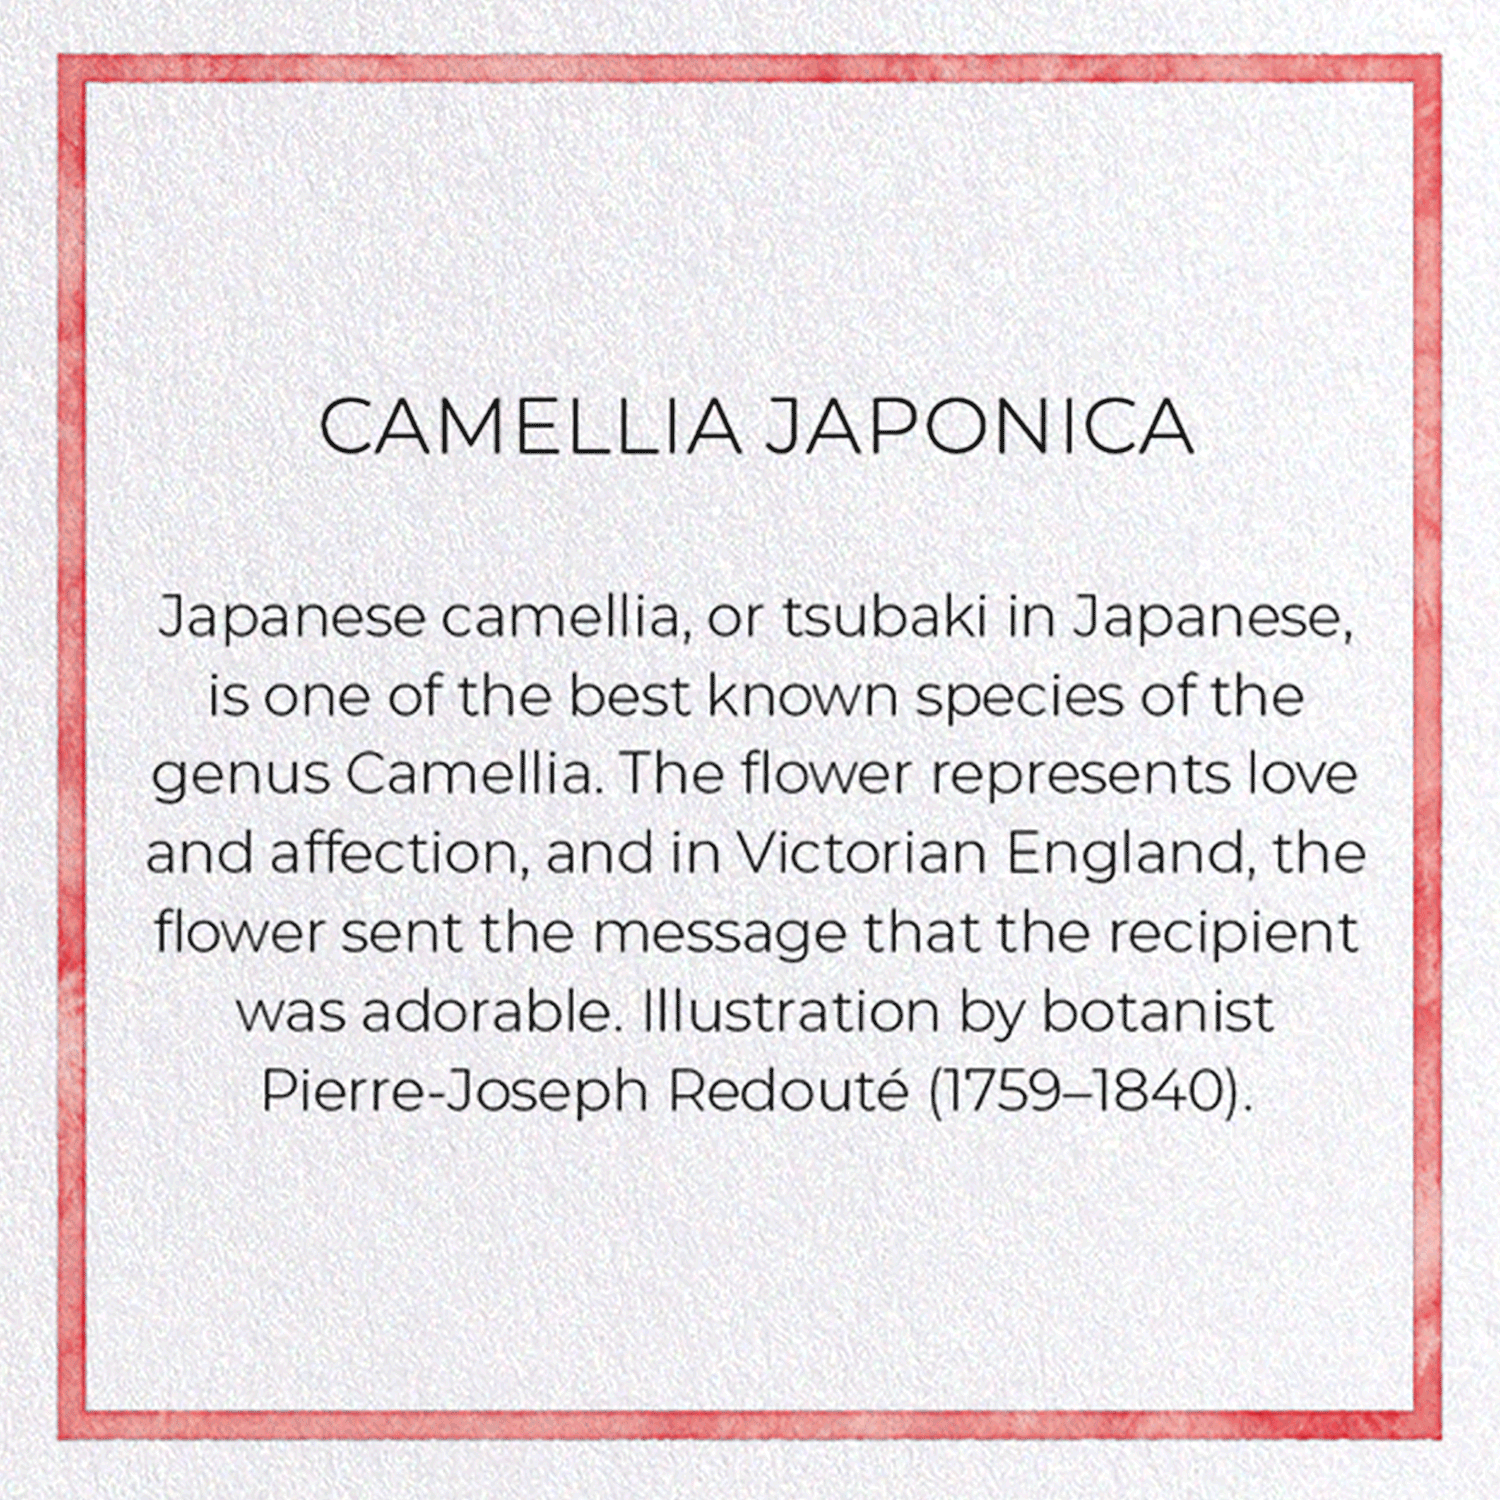 CAMELLIA JAPONICA